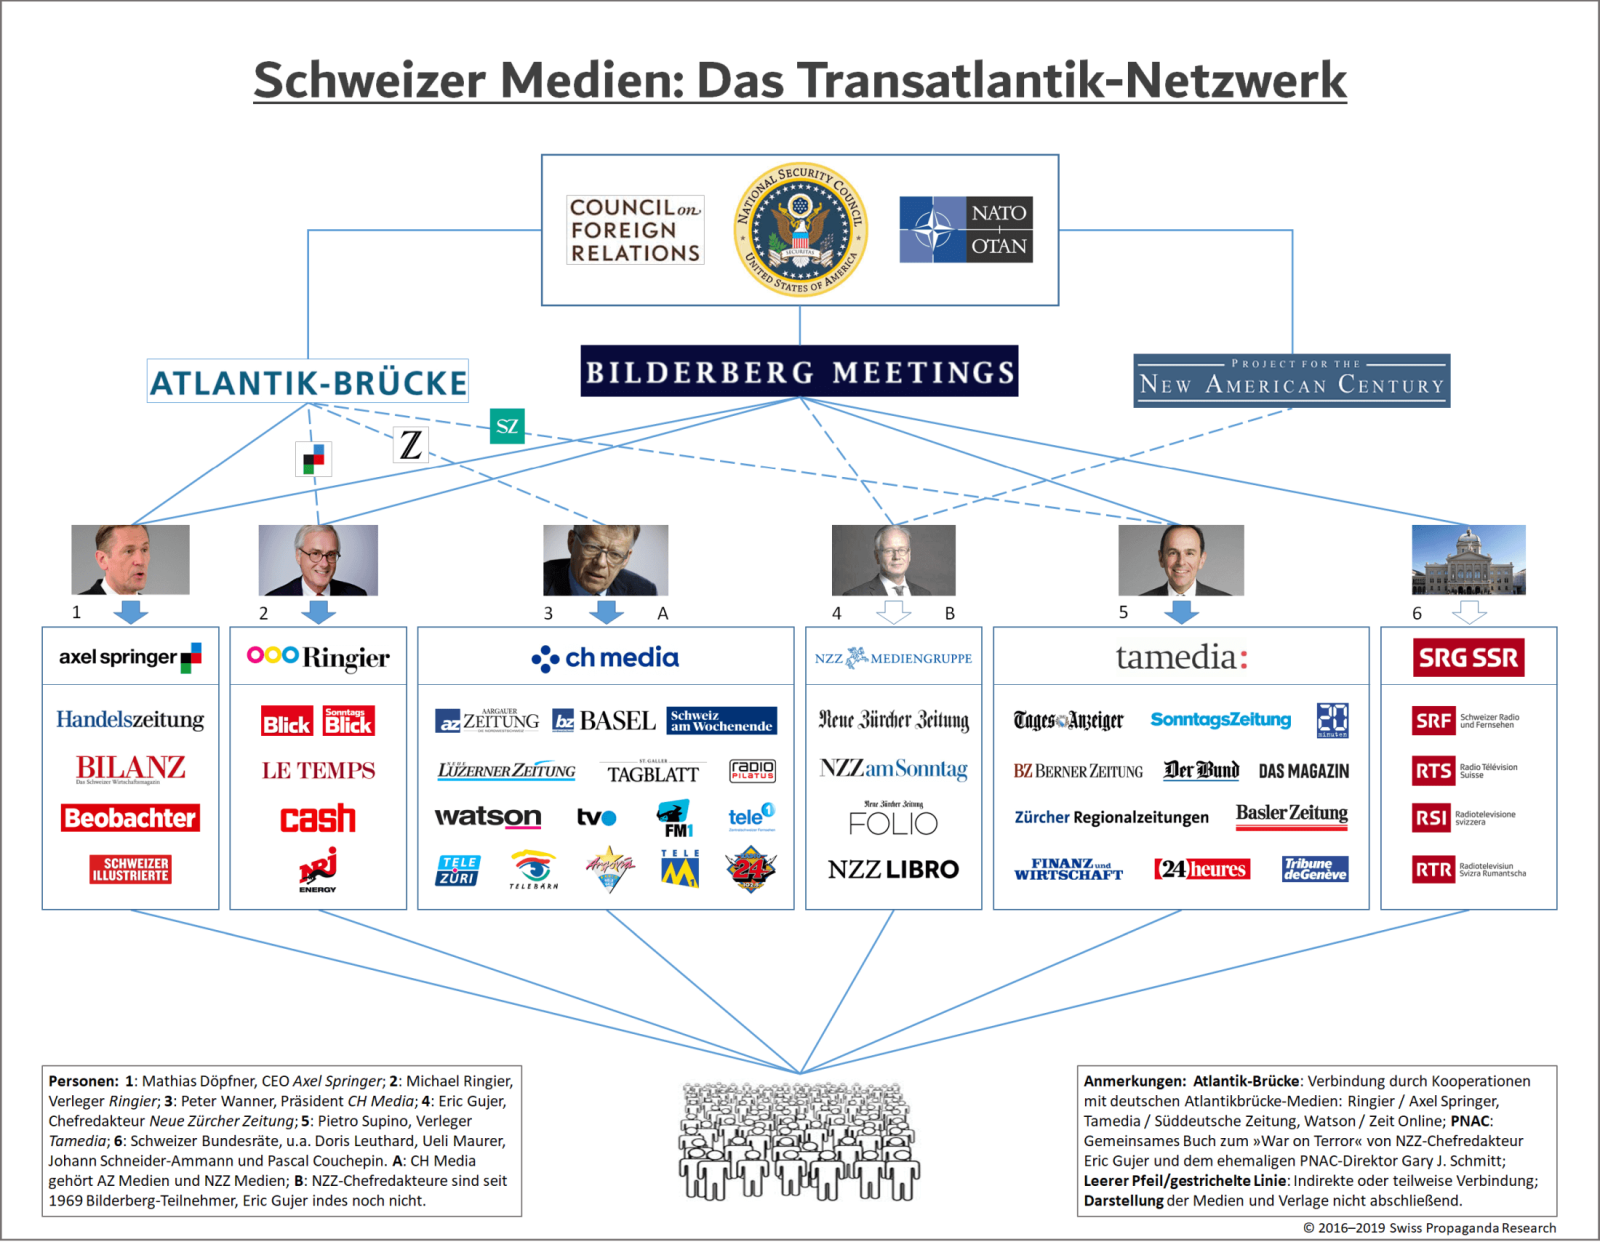 Nochmals zur Erinnerung: Schweizer Medien – das Transatlantik-Netzwerk